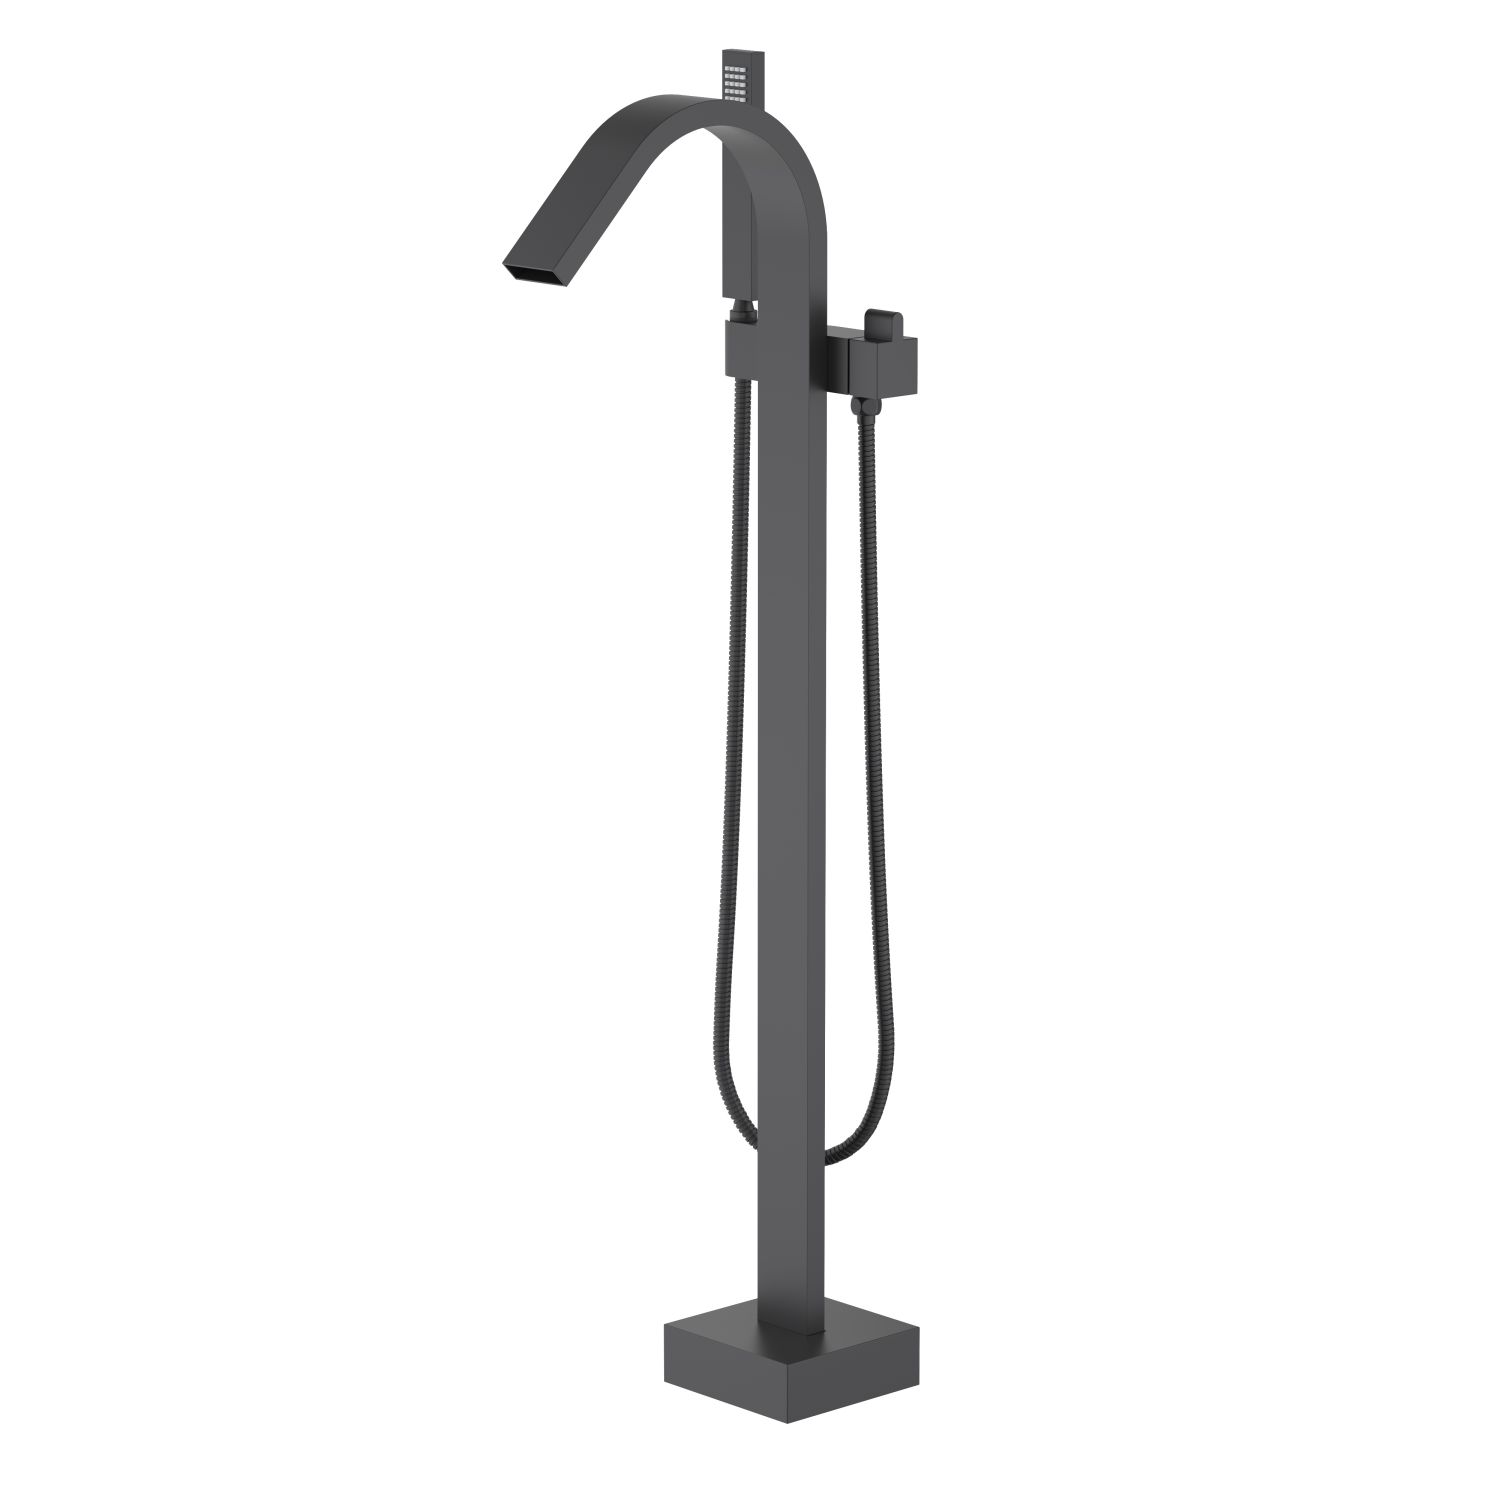 Floor standing tap mixer hand shower manufacturers